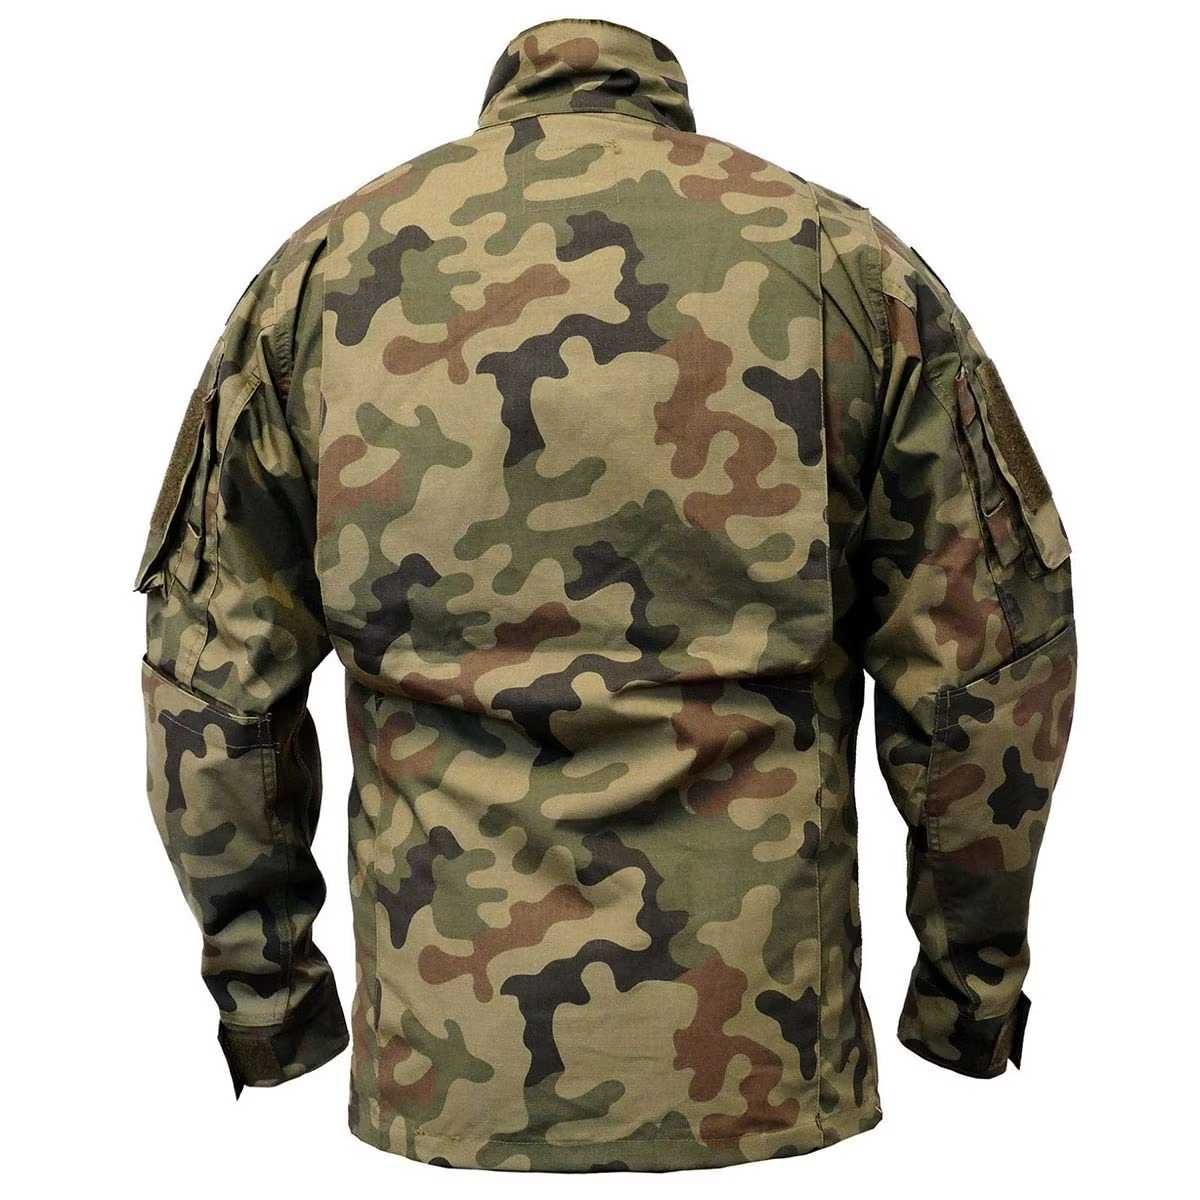 Bluza mundurowa, mundur polowy wz 2010 - IMA wzór 123 UL/MON XL/XS